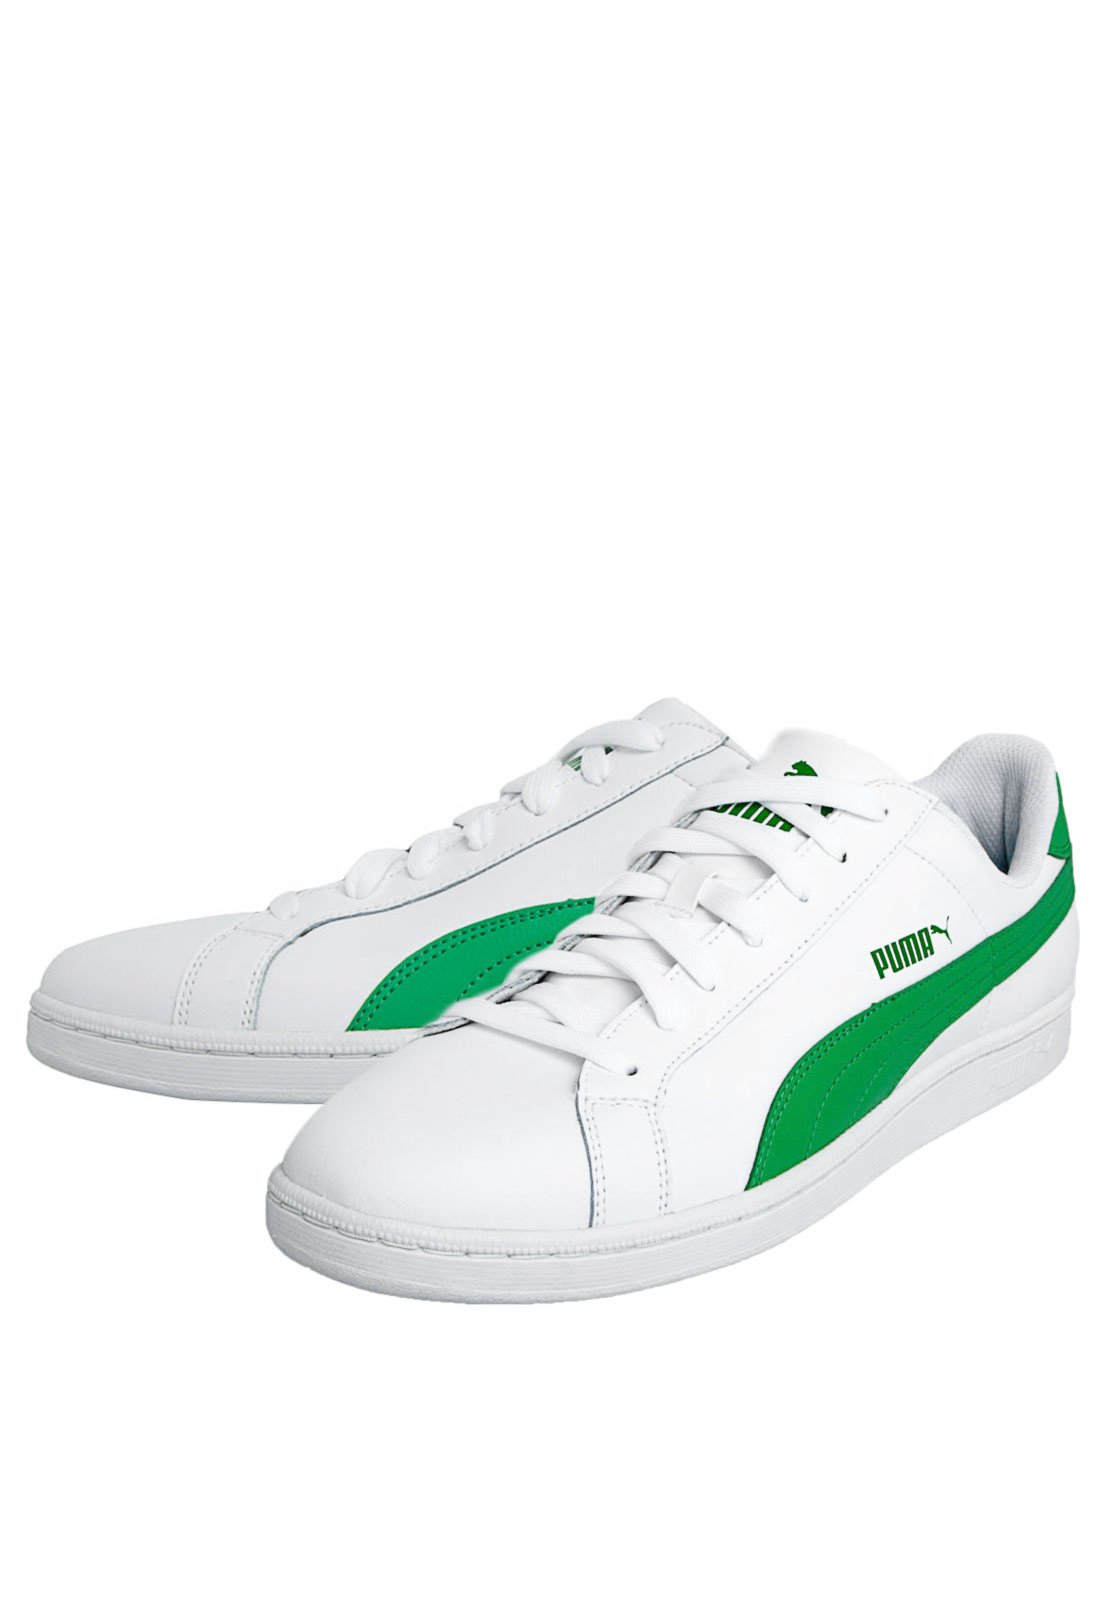 tenis puma branco e verde